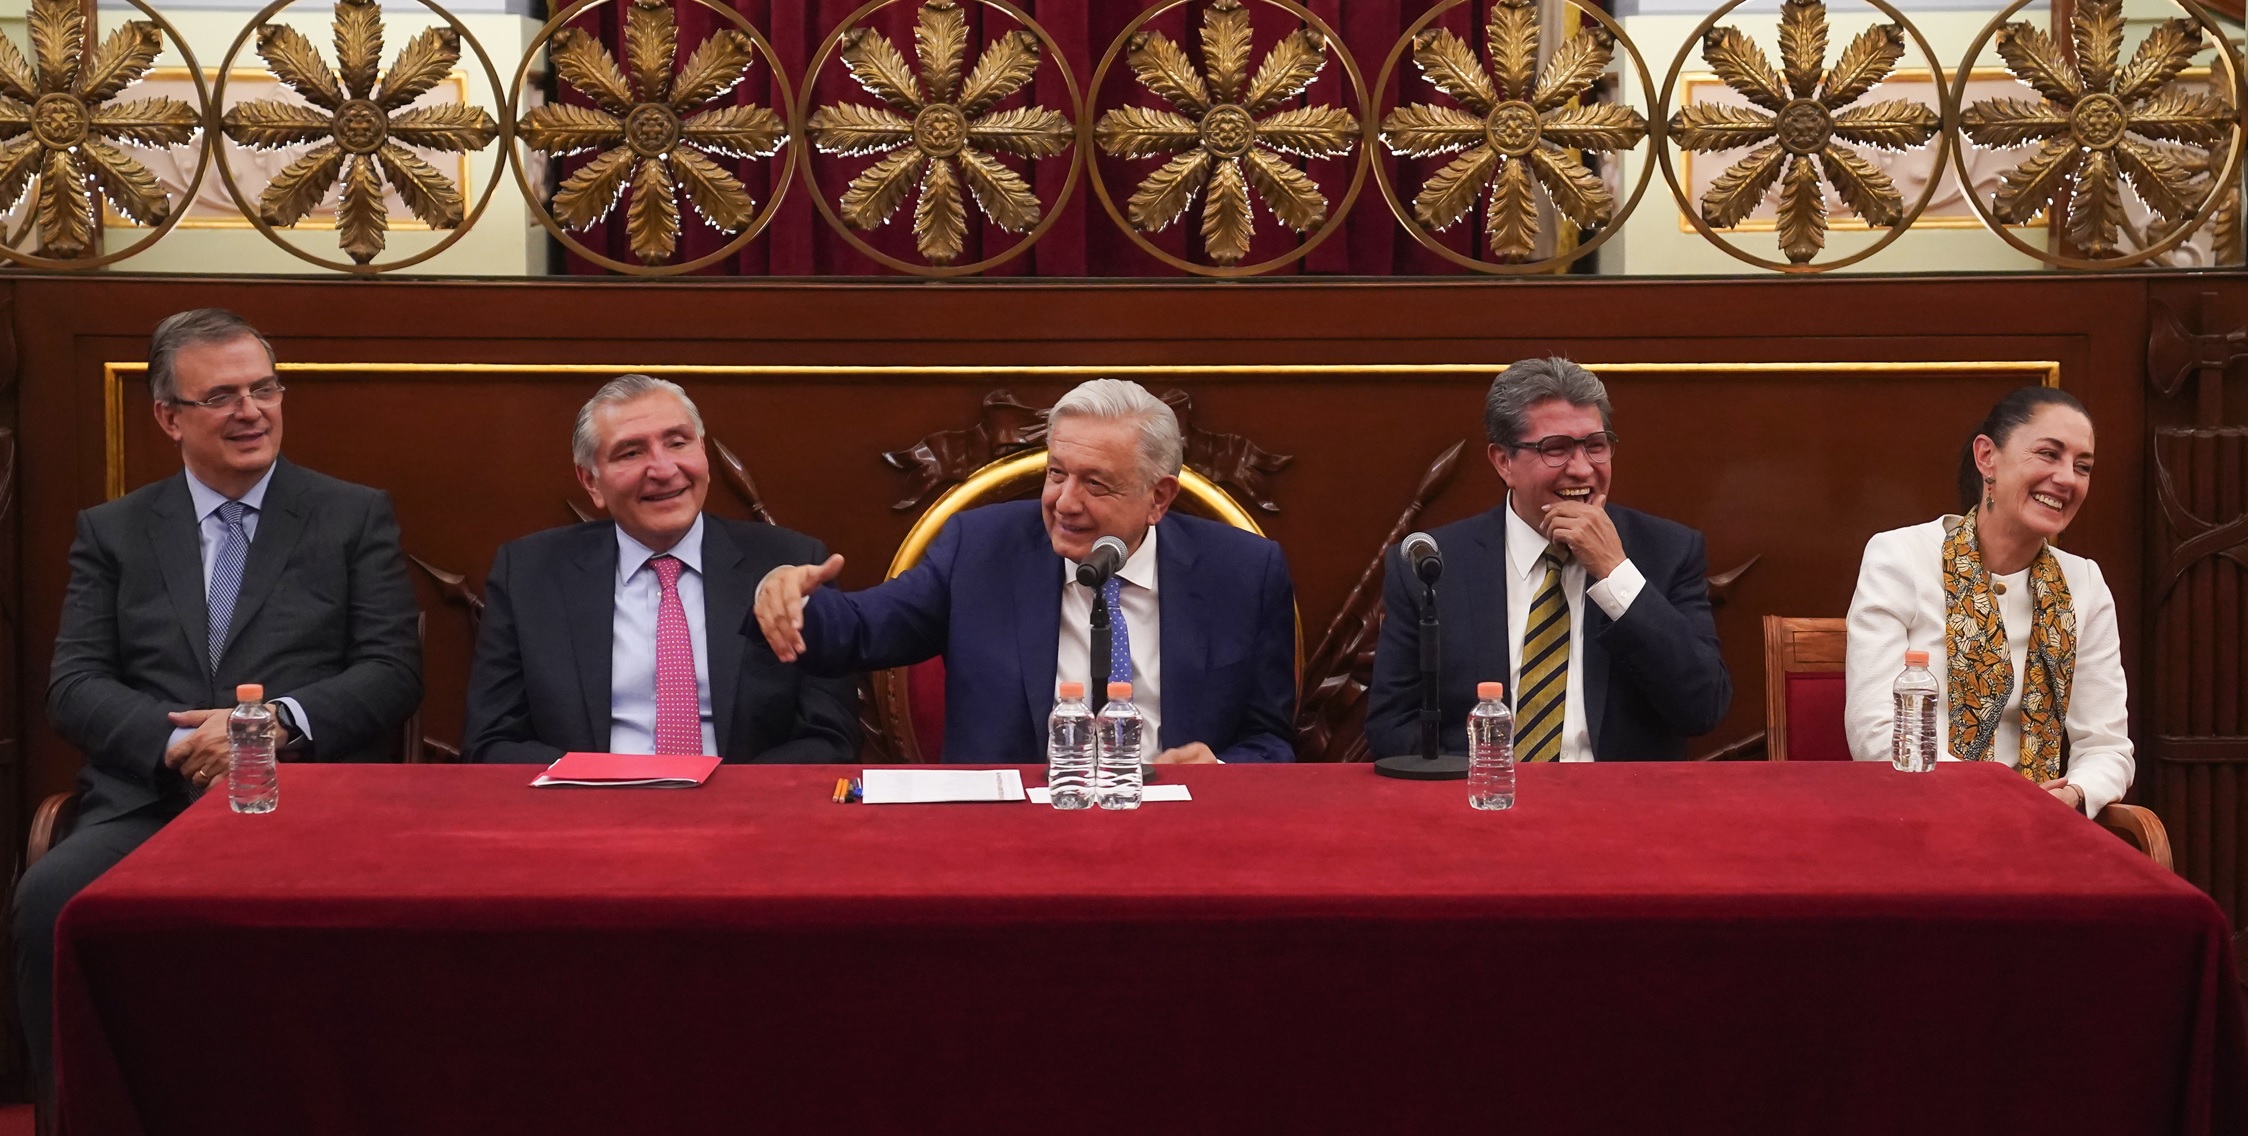 “Simplemente era un saludo cordial, amable, amistoso con nuestro presidente Andrés Manuel López Obrador”, subrayó.